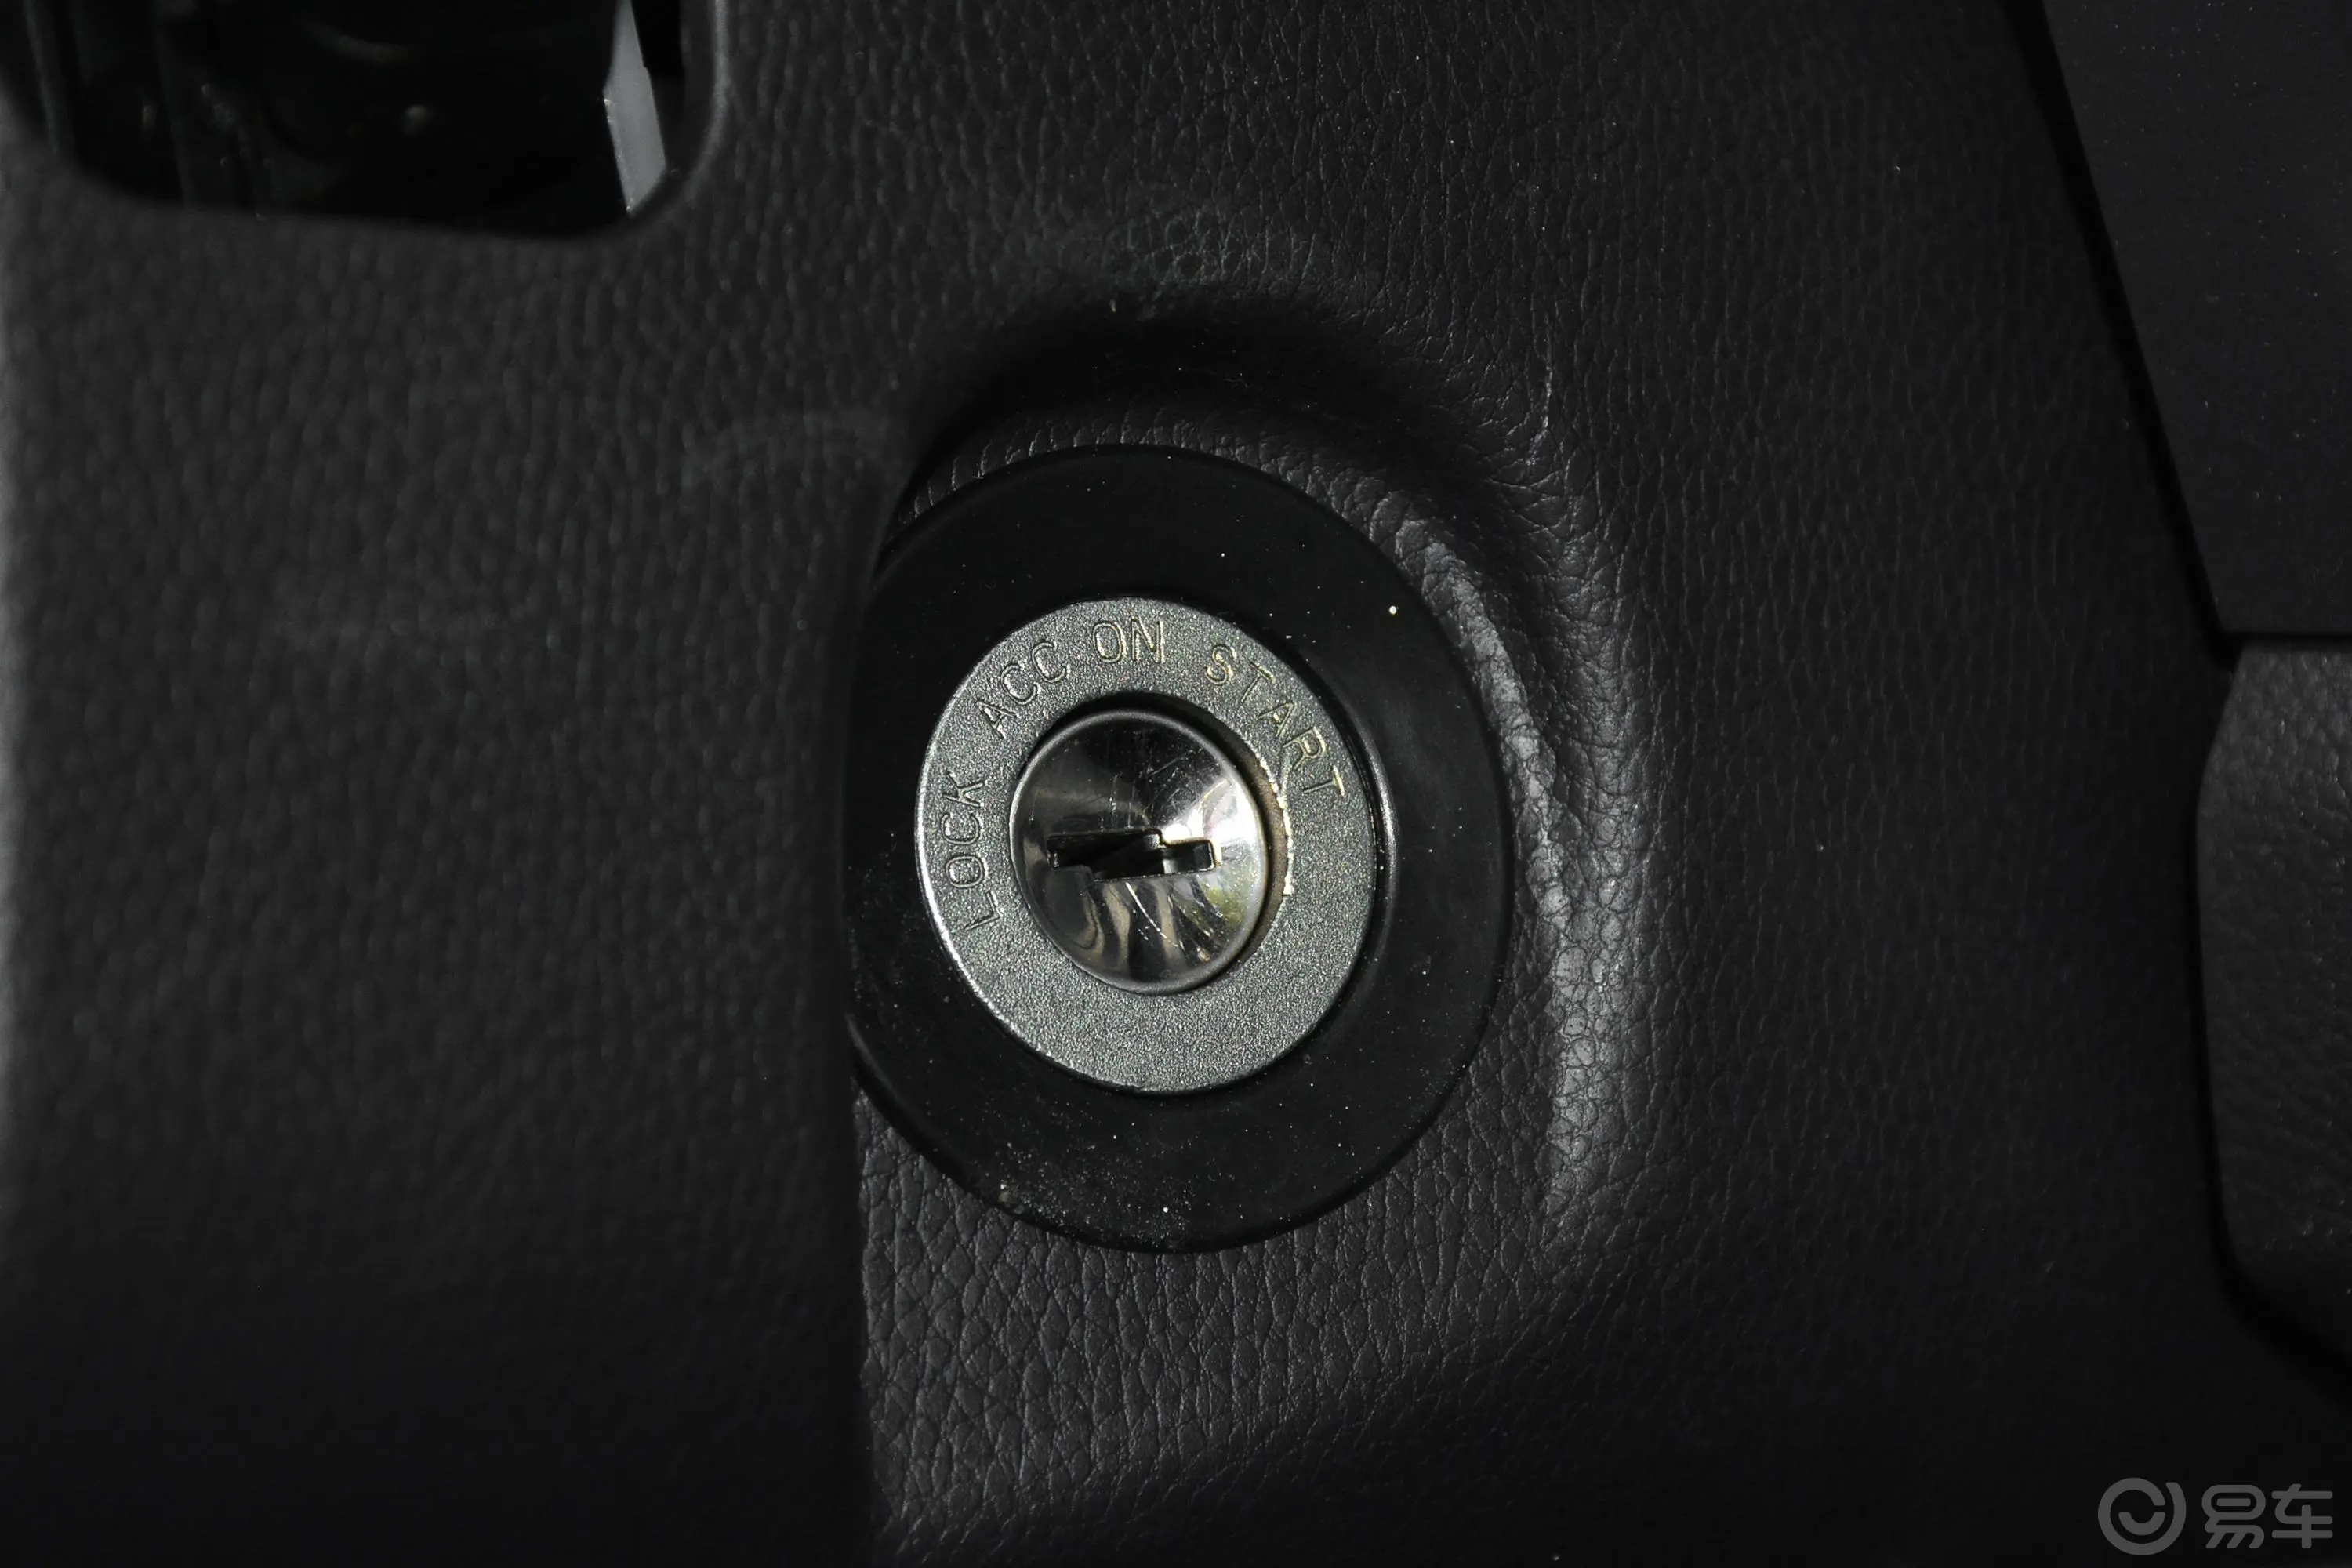 祥菱VV3 东安1.6L 122马力 3.7米 货箱仓栅式 单排 双后轮 标准版 汽油 国VI钥匙孔或一键启动按键